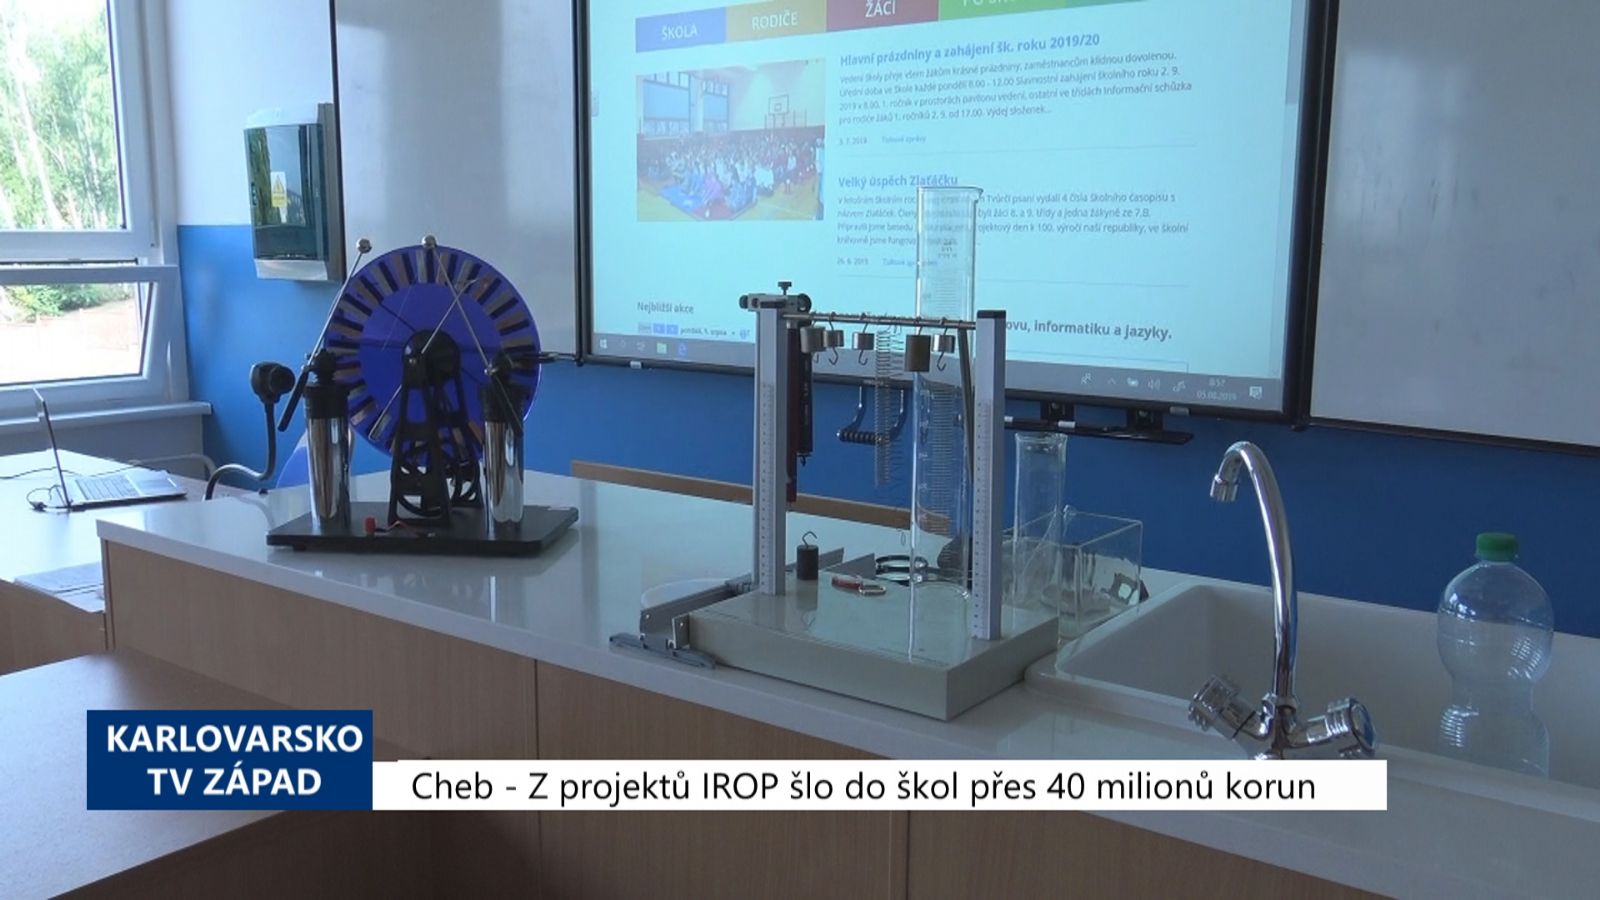 Chebsko: Z projektů IROP šlo do škol přes 40 milionů korun (TV Západ)